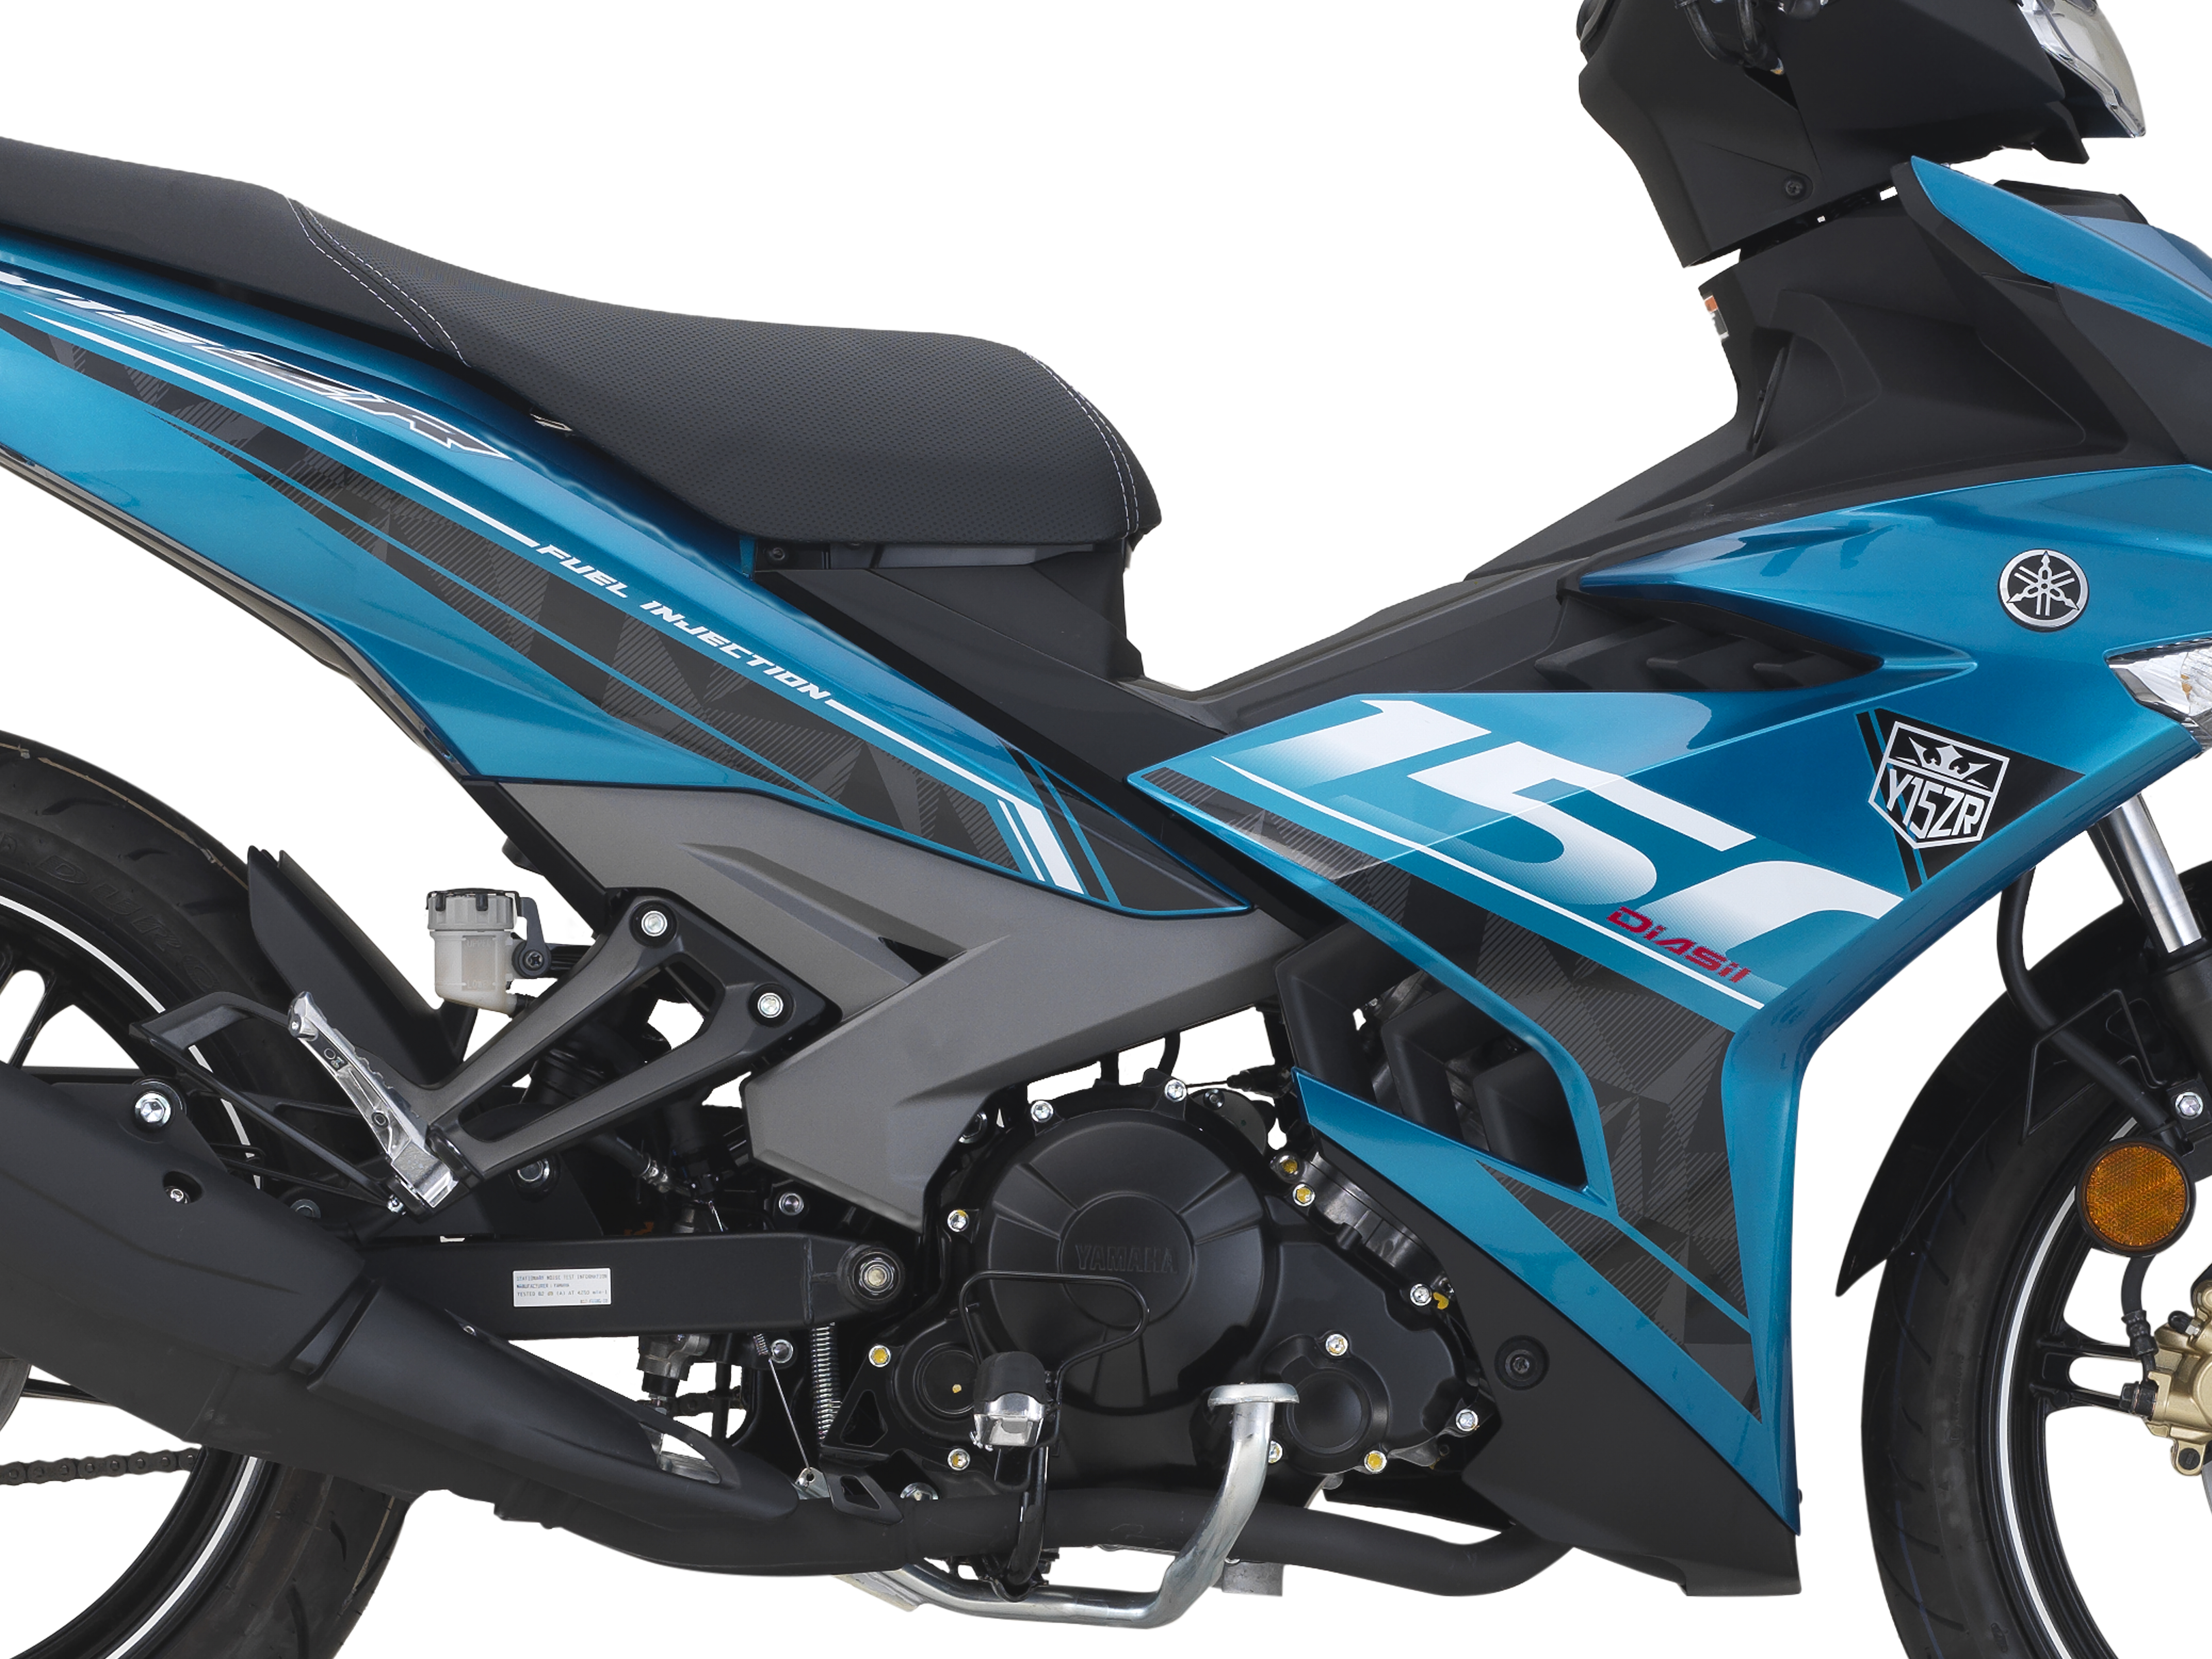 2021 Yamaha Y15ZR v2 Launched BikesRepublic